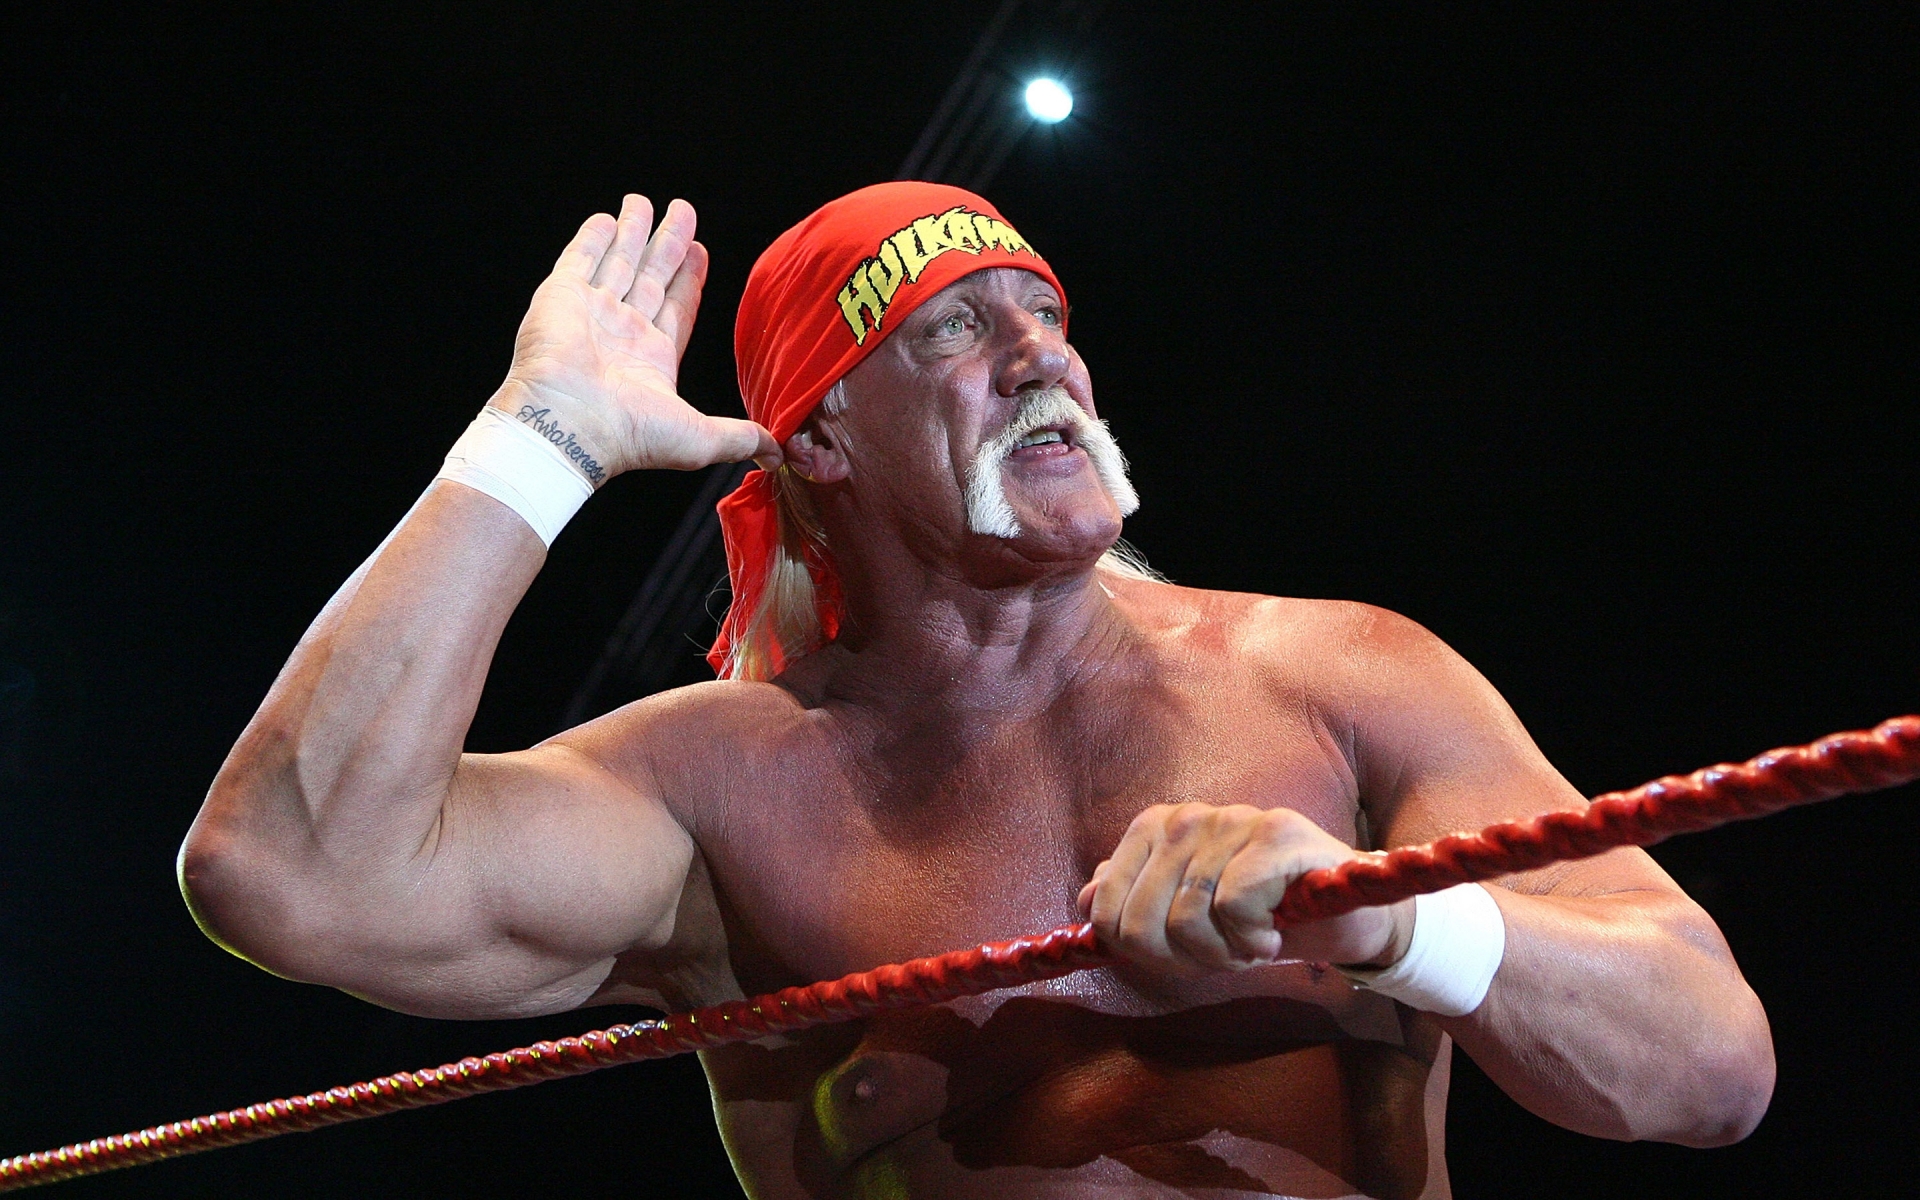 Hulk Hogan Salute for 1920 x 1200 widescreen resolution